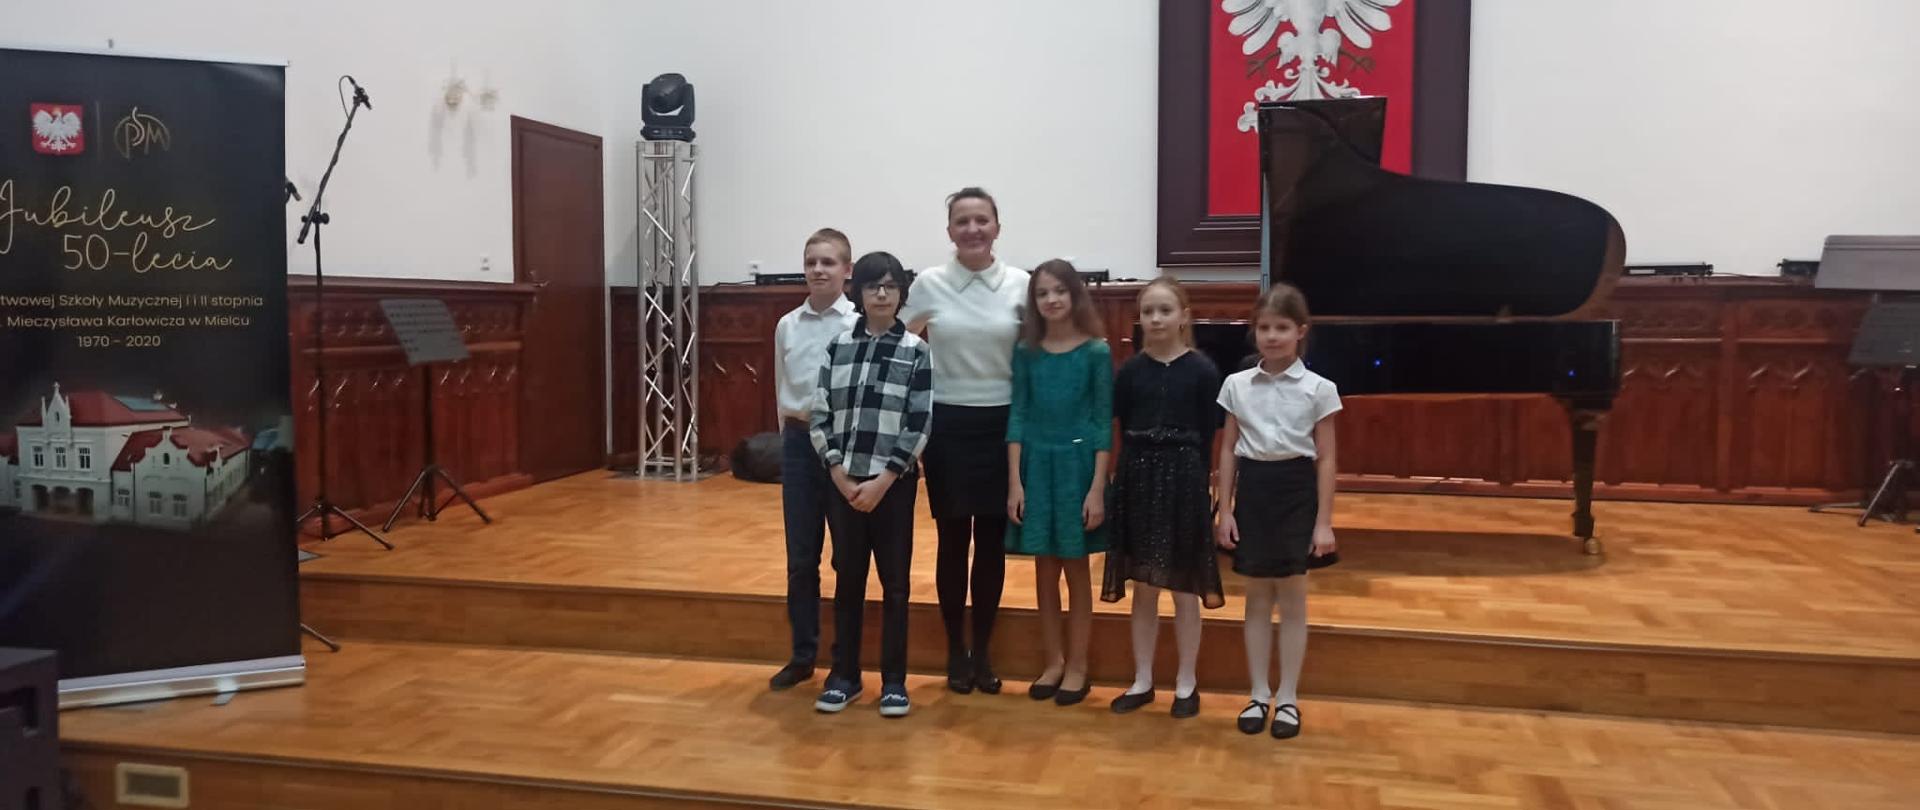 uczniowie klasy fortepianu wraz z nauczycielką Joanną Stachowicz podczas koncertu klasowego na sali królewskiej naszej szkoły